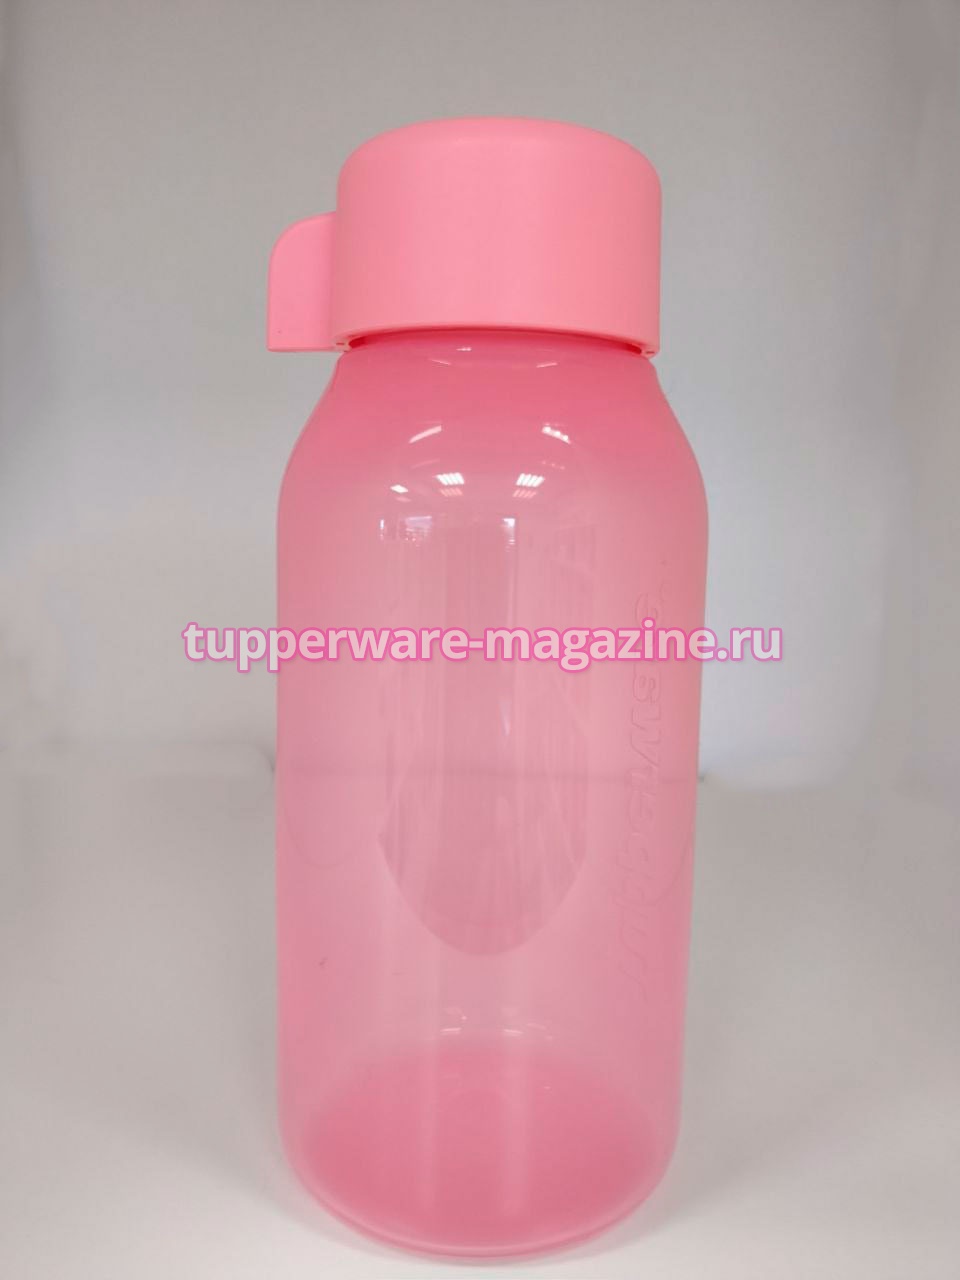 Эко-бутылка мини (350) мл в розовом цвете без клапана